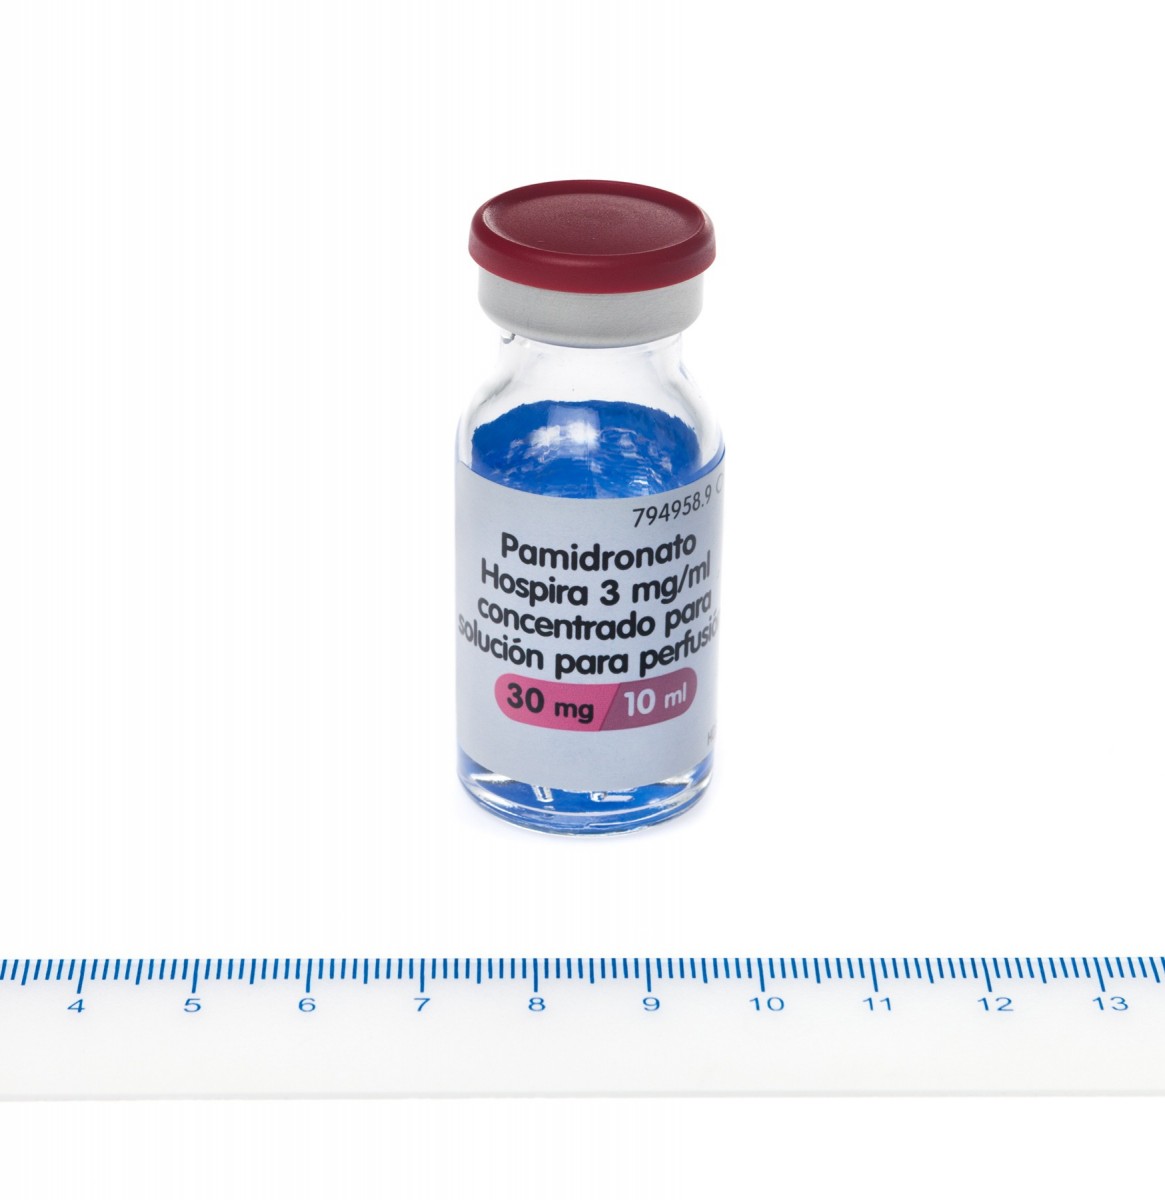 PAMIDRONATO HOSPIRA 3 mg/ml CONCENTRADO PARA SOLUCION PARA PERFUSION , 5 viales de 5 ml fotografía de la forma farmacéutica.